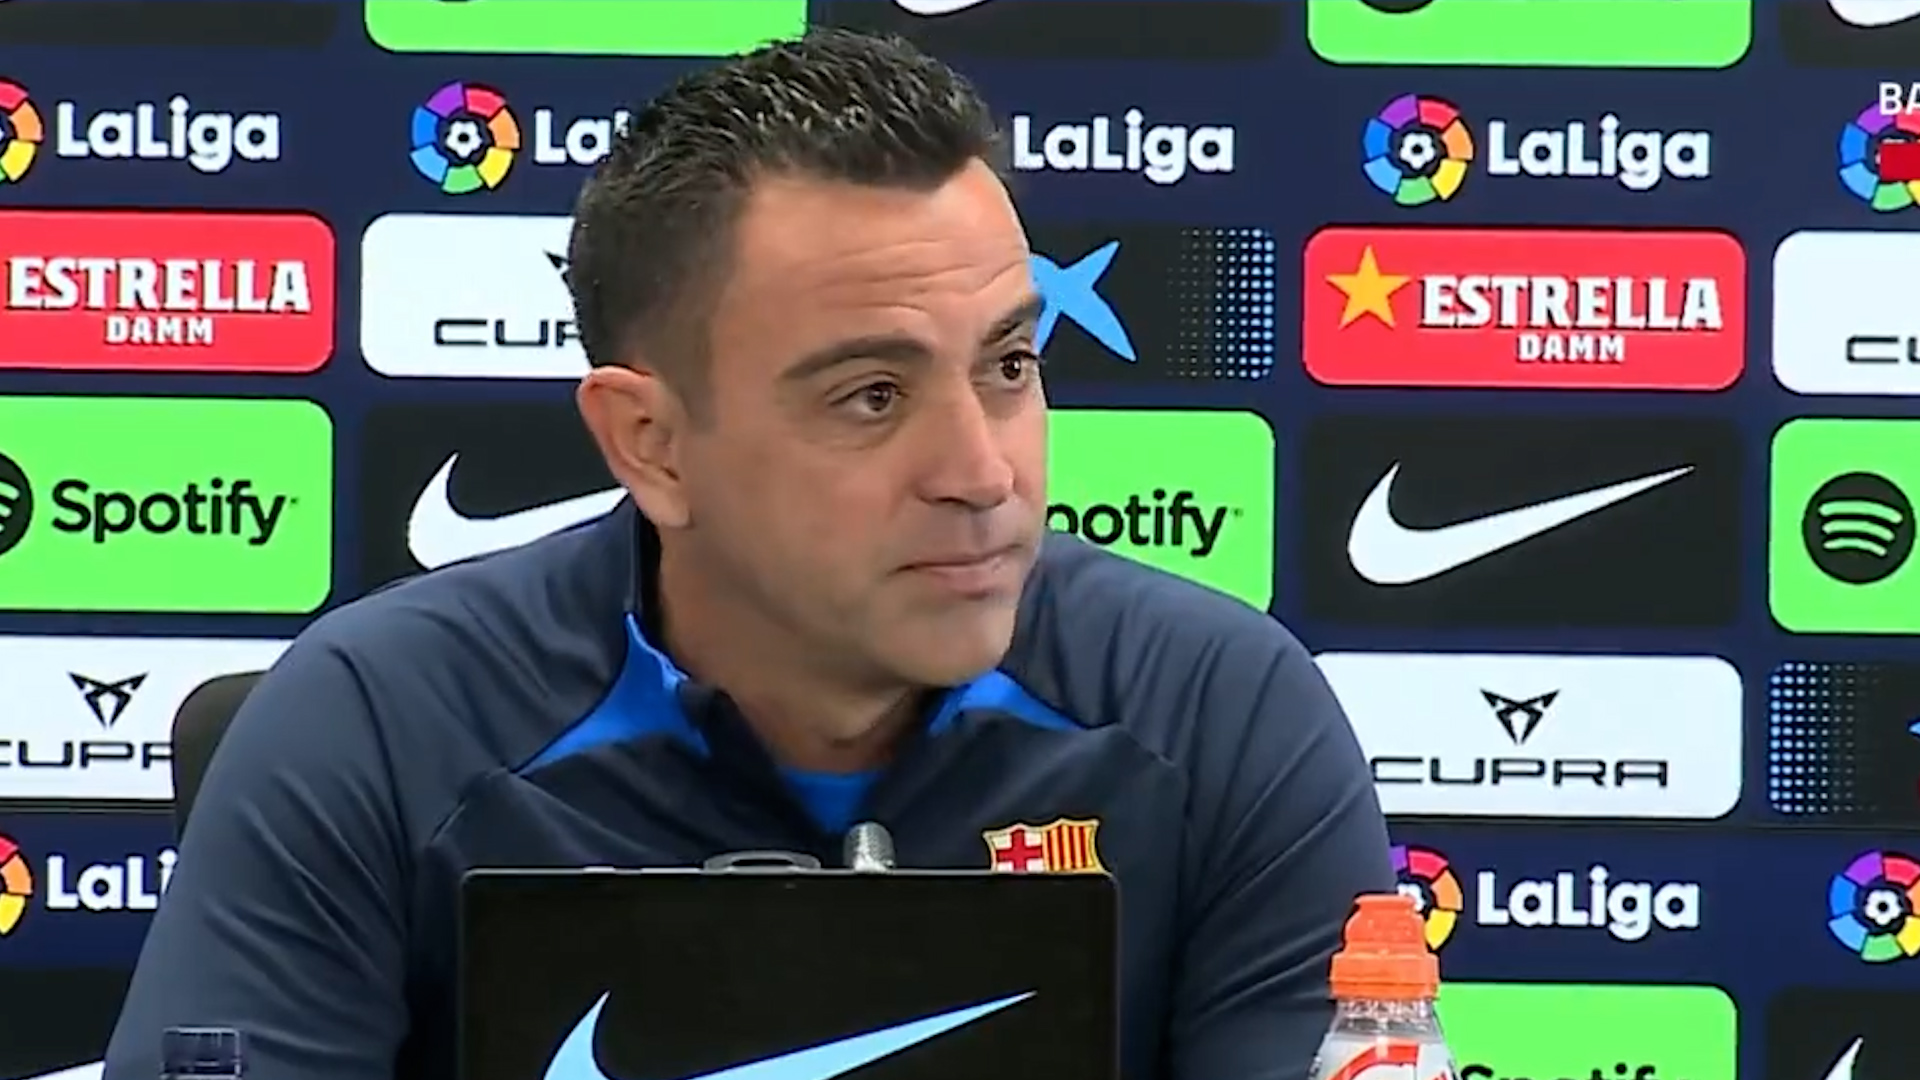 Xavi discrepa con Guardiola sobre el racismo: “Si nos quedamos como estamos, no avanzaremos”